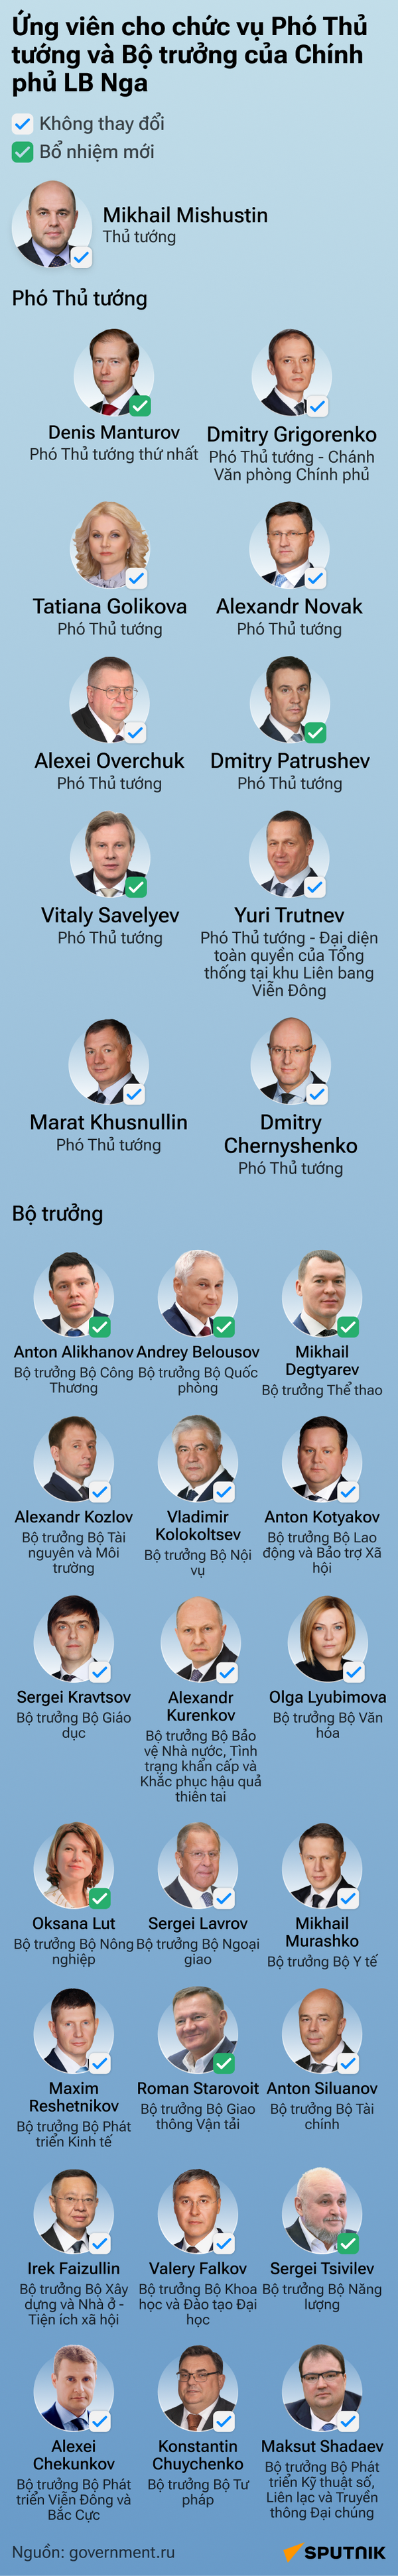 Những ai có thể tham gia chính phủ mới của Nga? - Sputnik Việt Nam